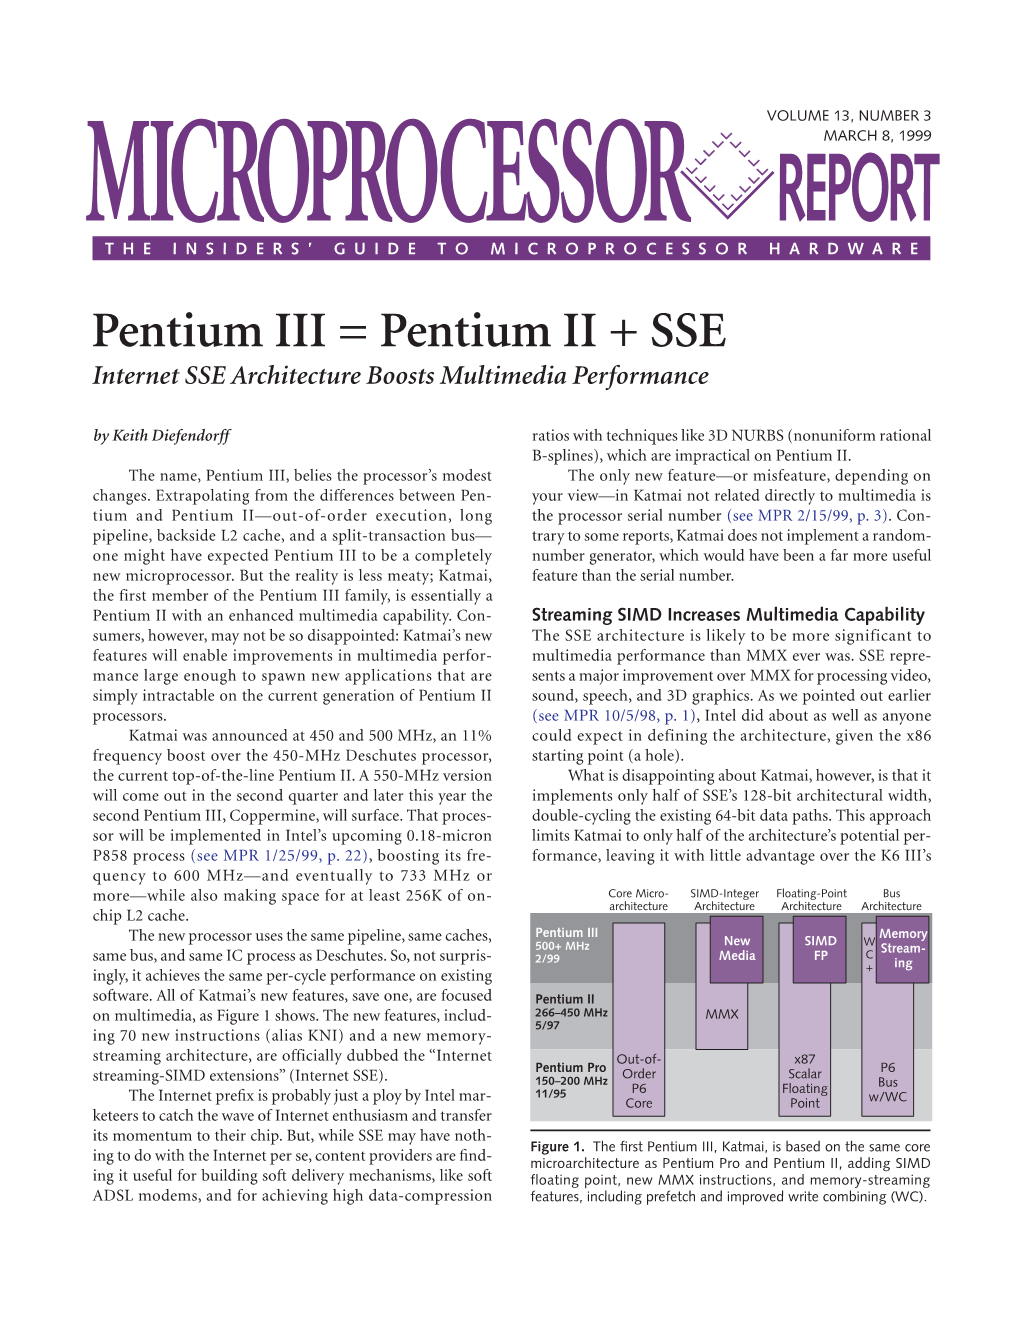 Pentium III = Pentium II + SSE: 3/8/99